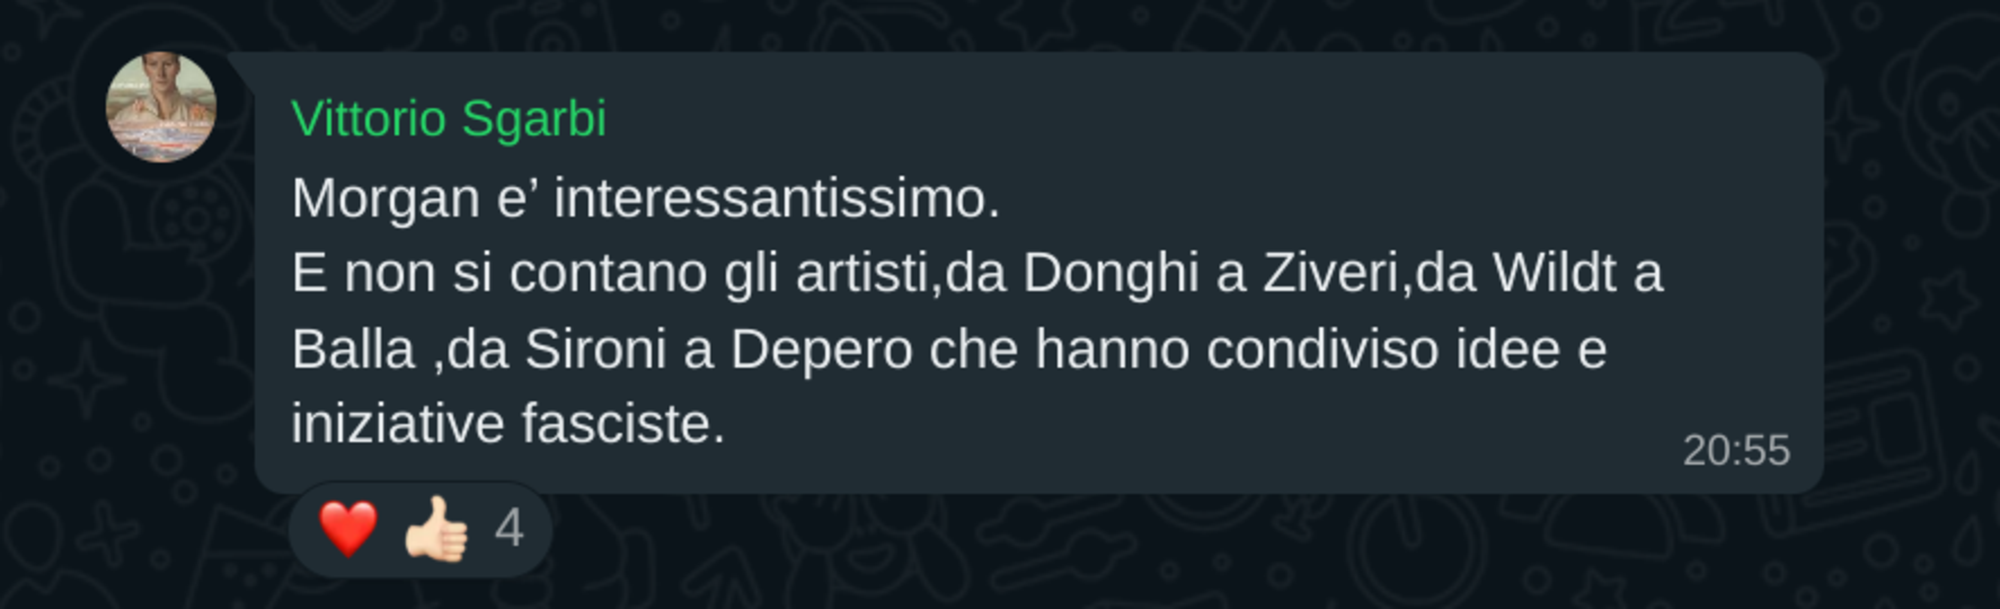 Il messaggio di Vittorio Sgarbi in difesa di Morgan 